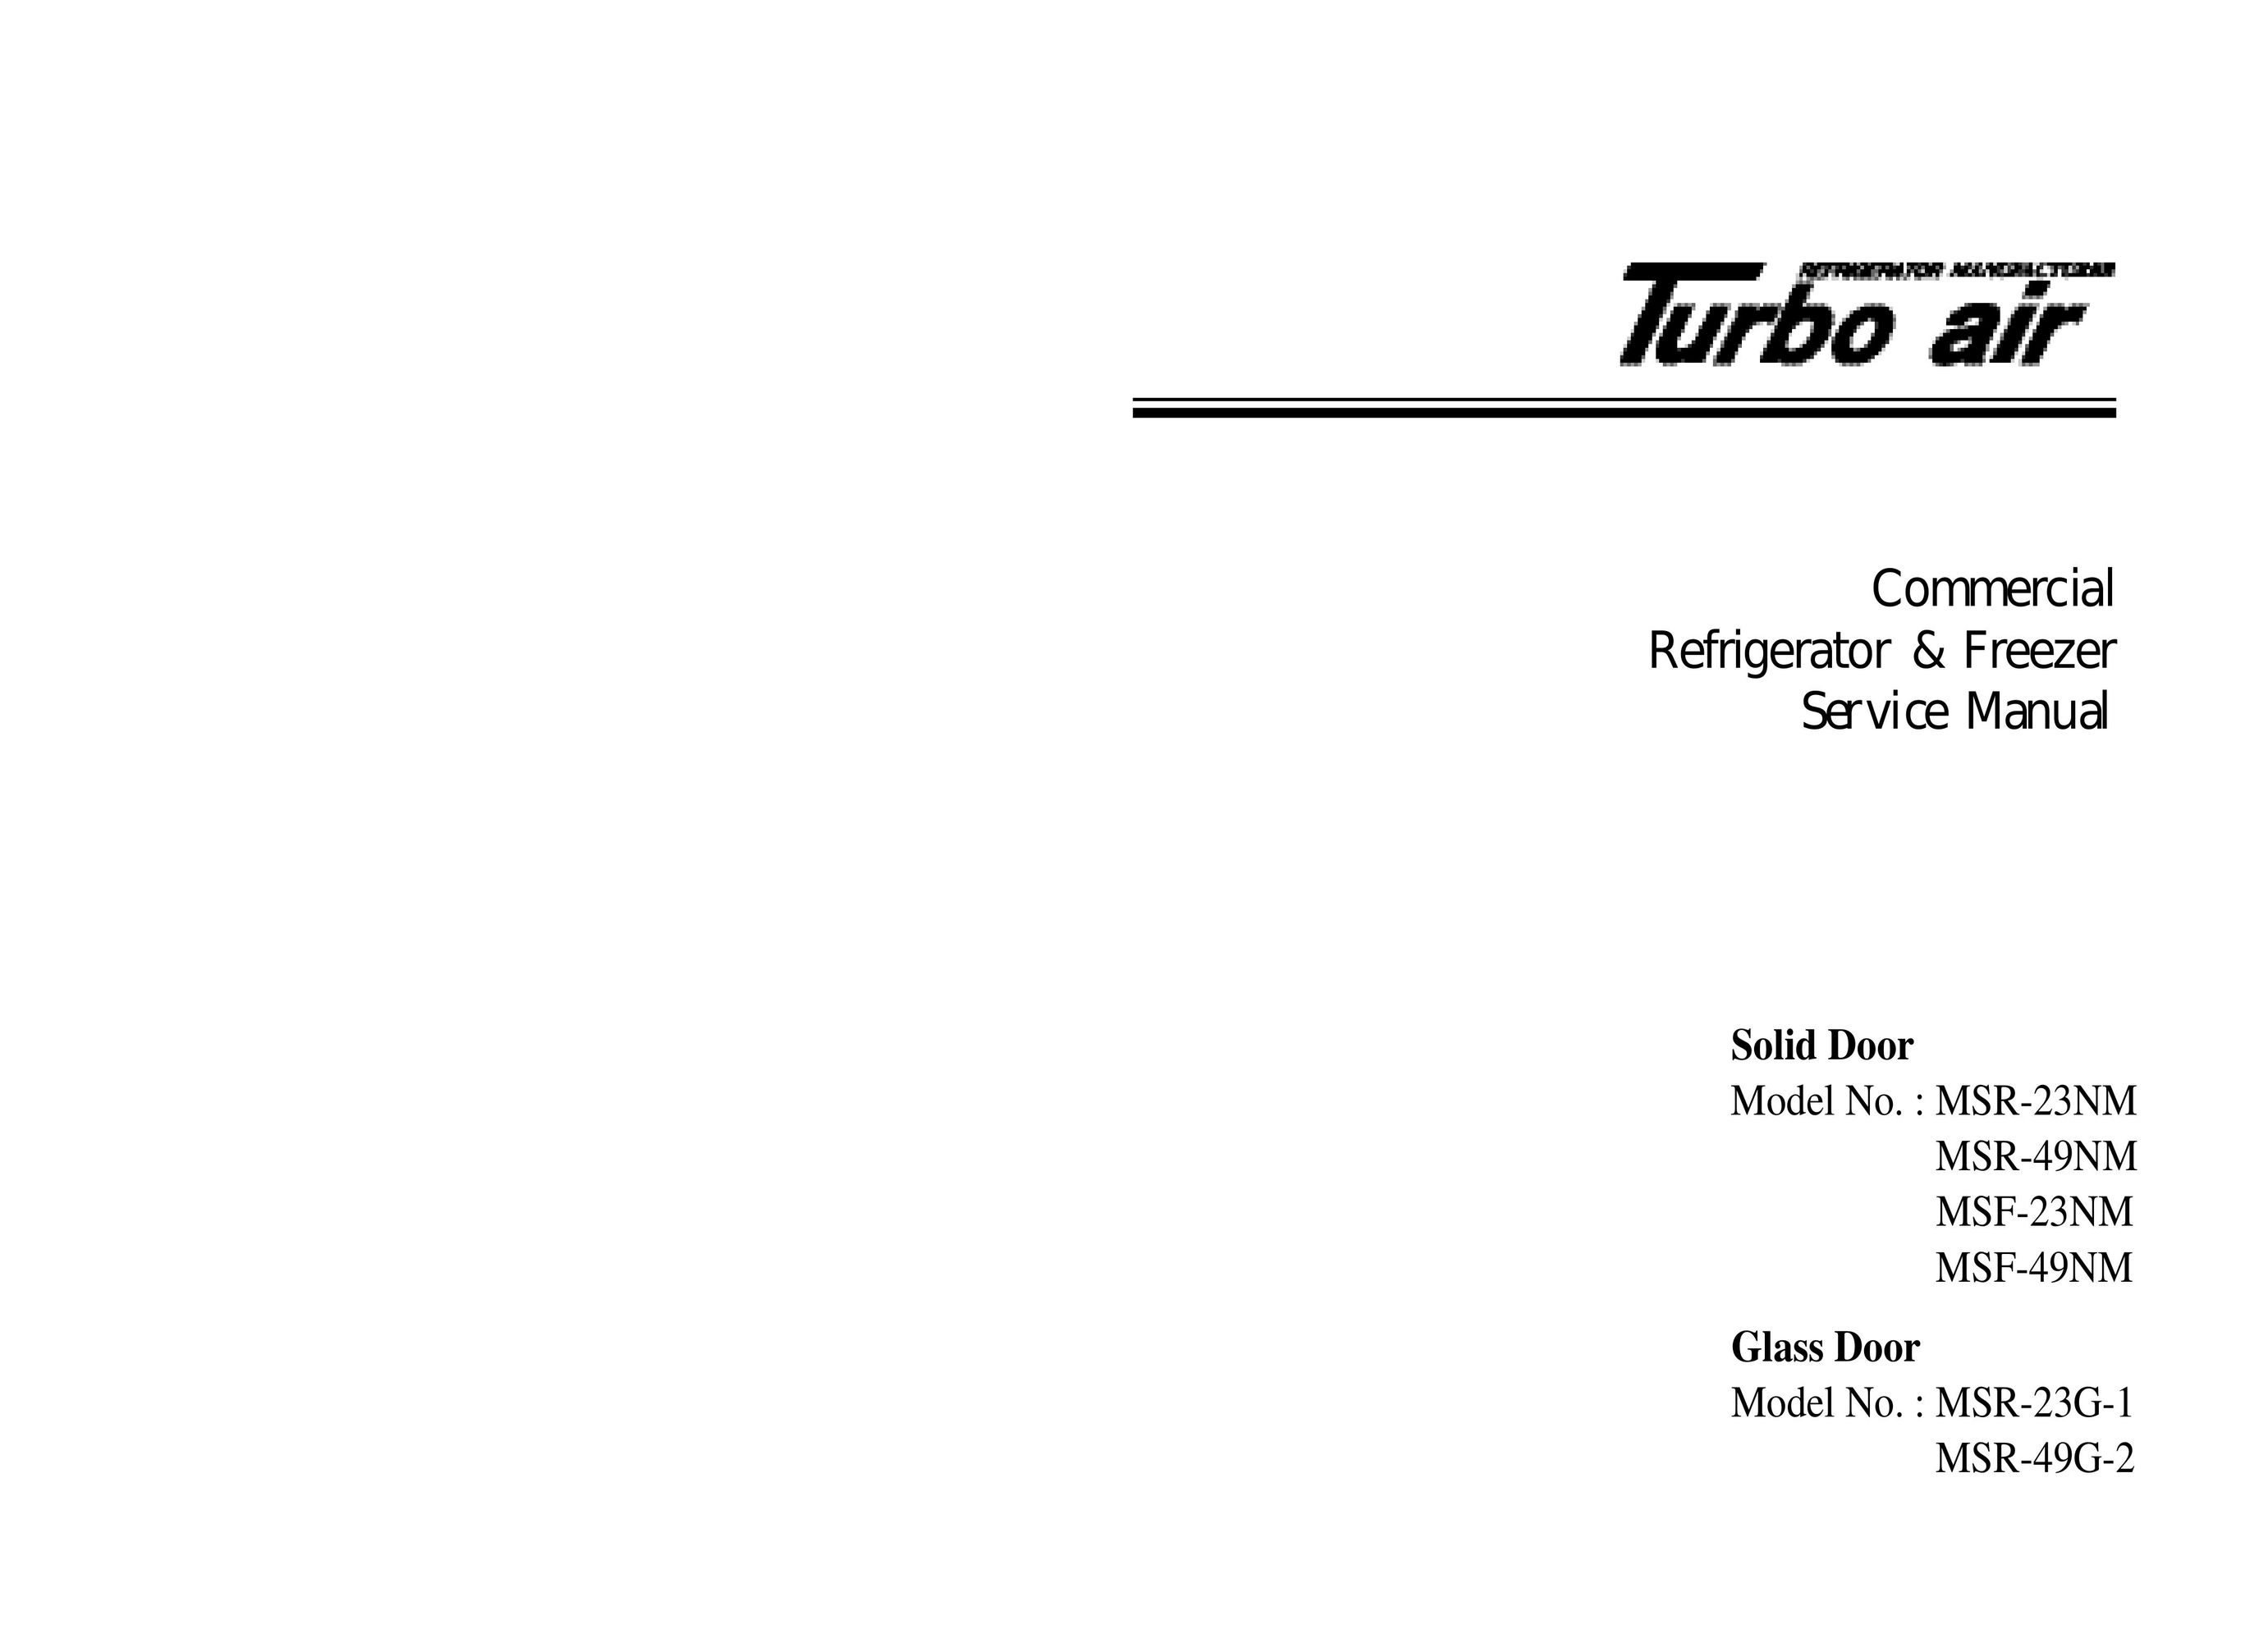 Turbo Air MSF-49NM Door User Manual